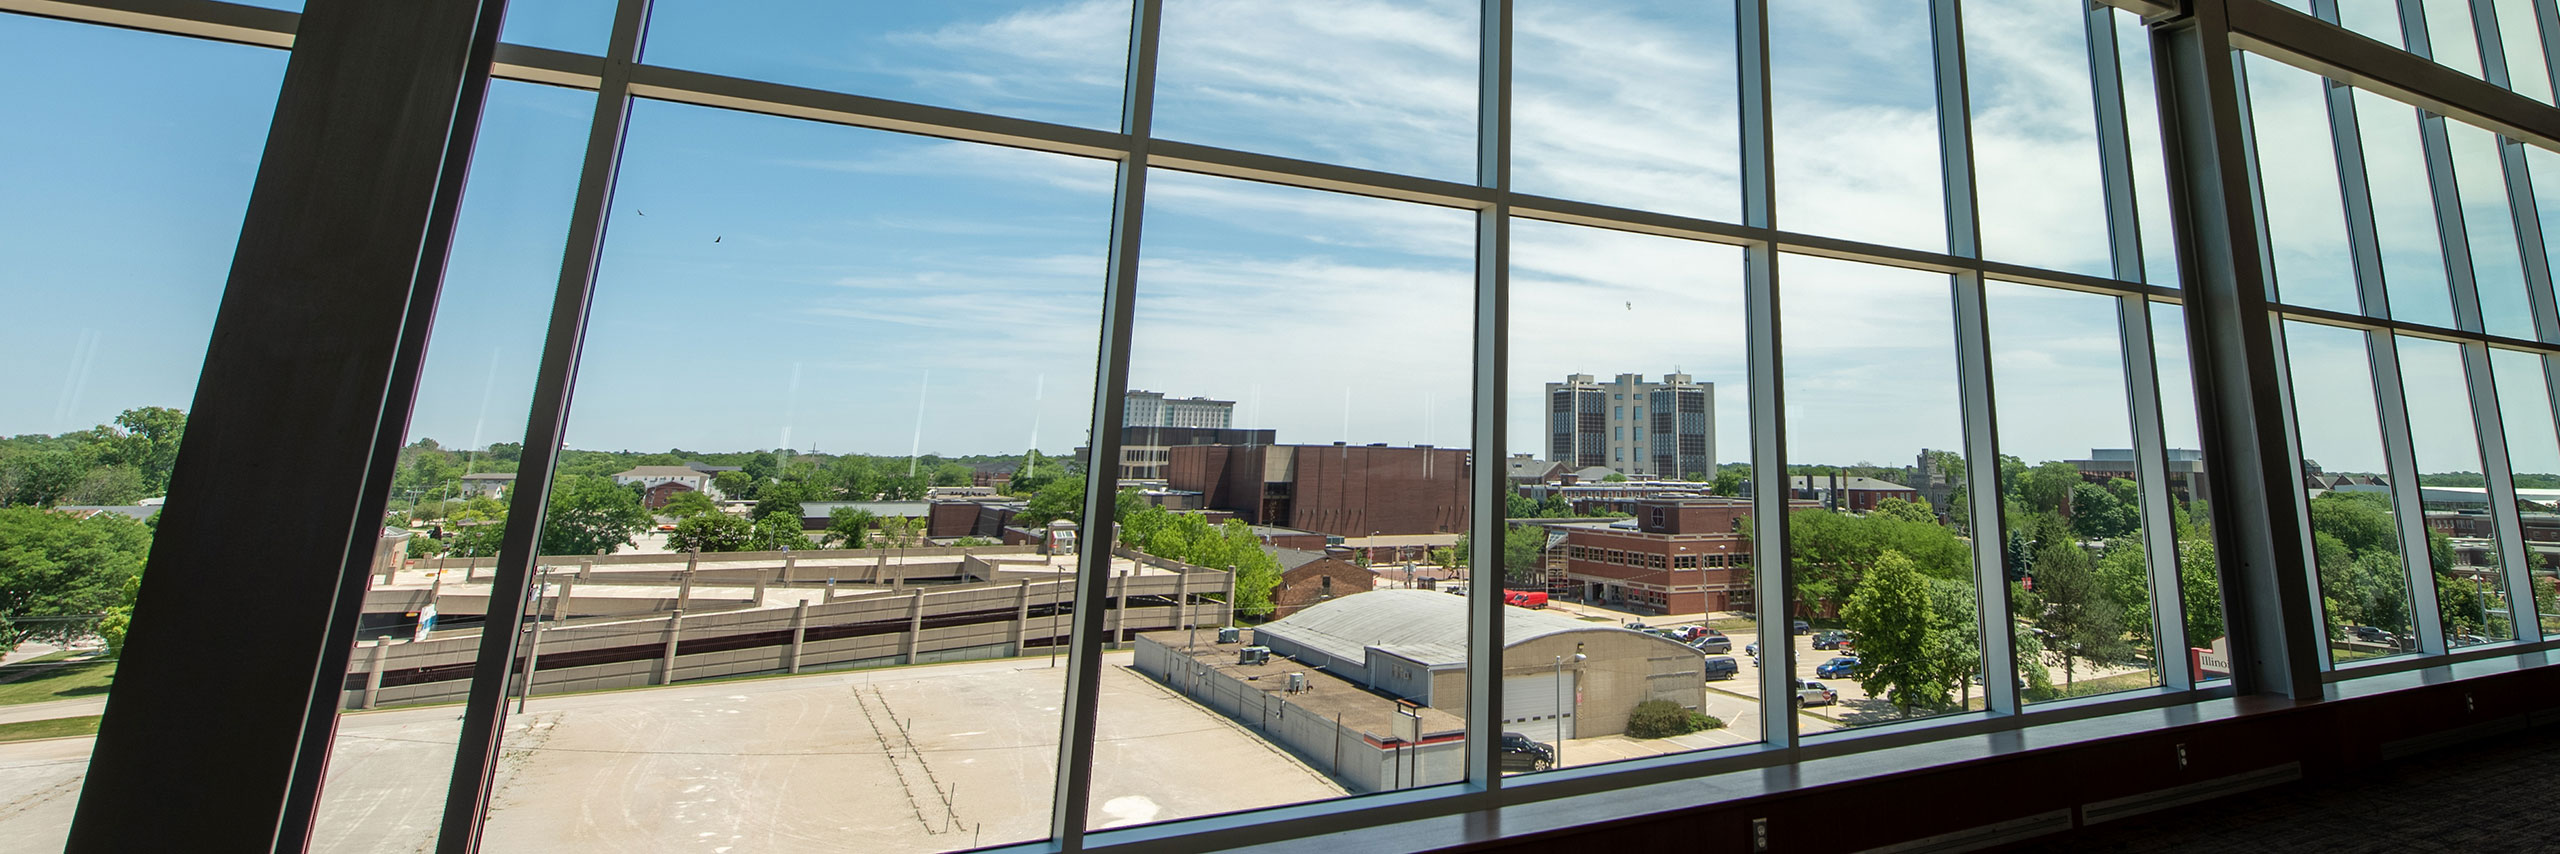 校园环境的窗口视图。